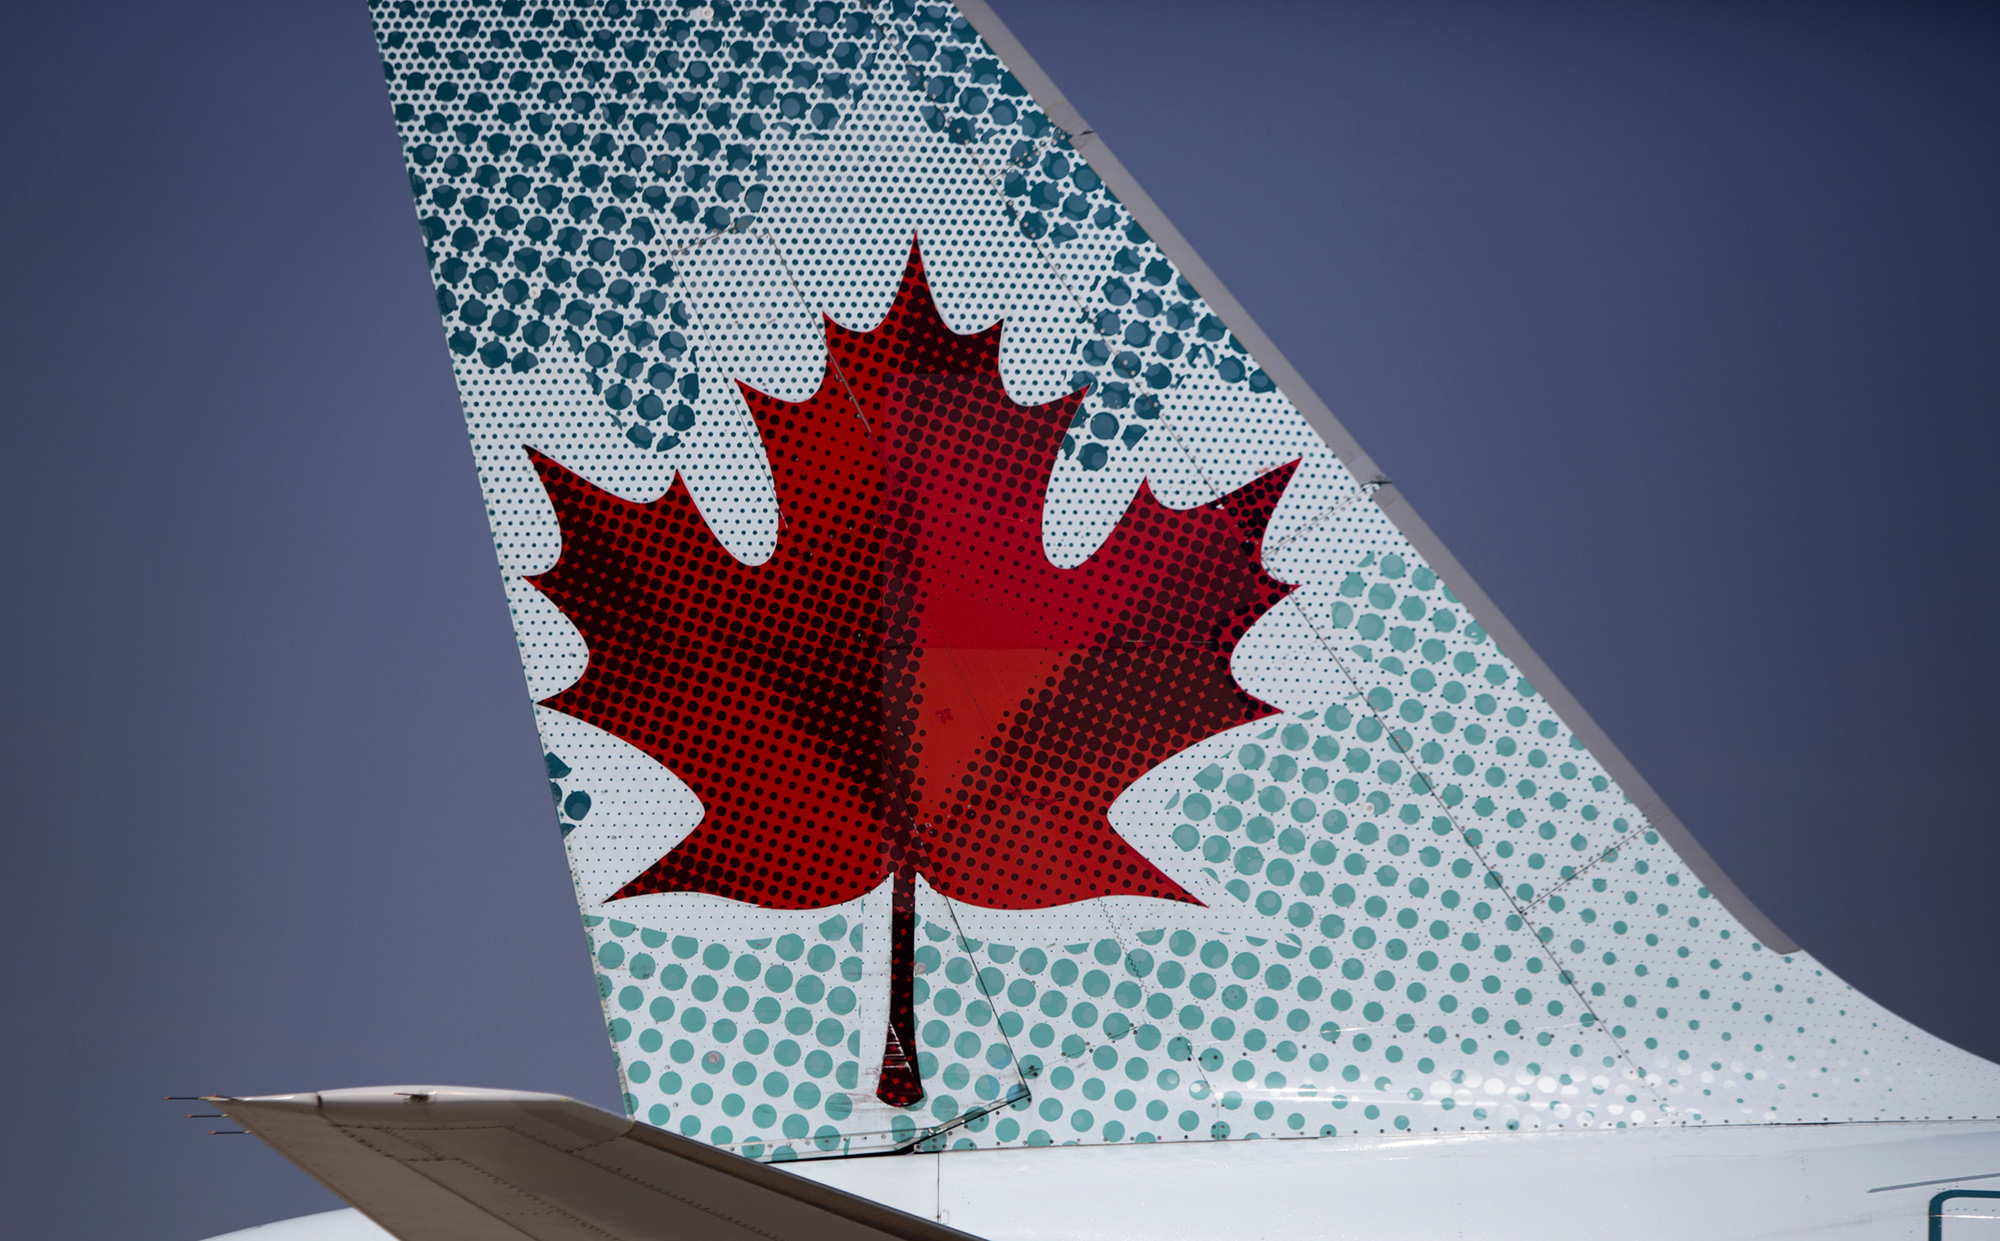 An Air Canada aircraft taxis at Toronto Pearson International Airport.